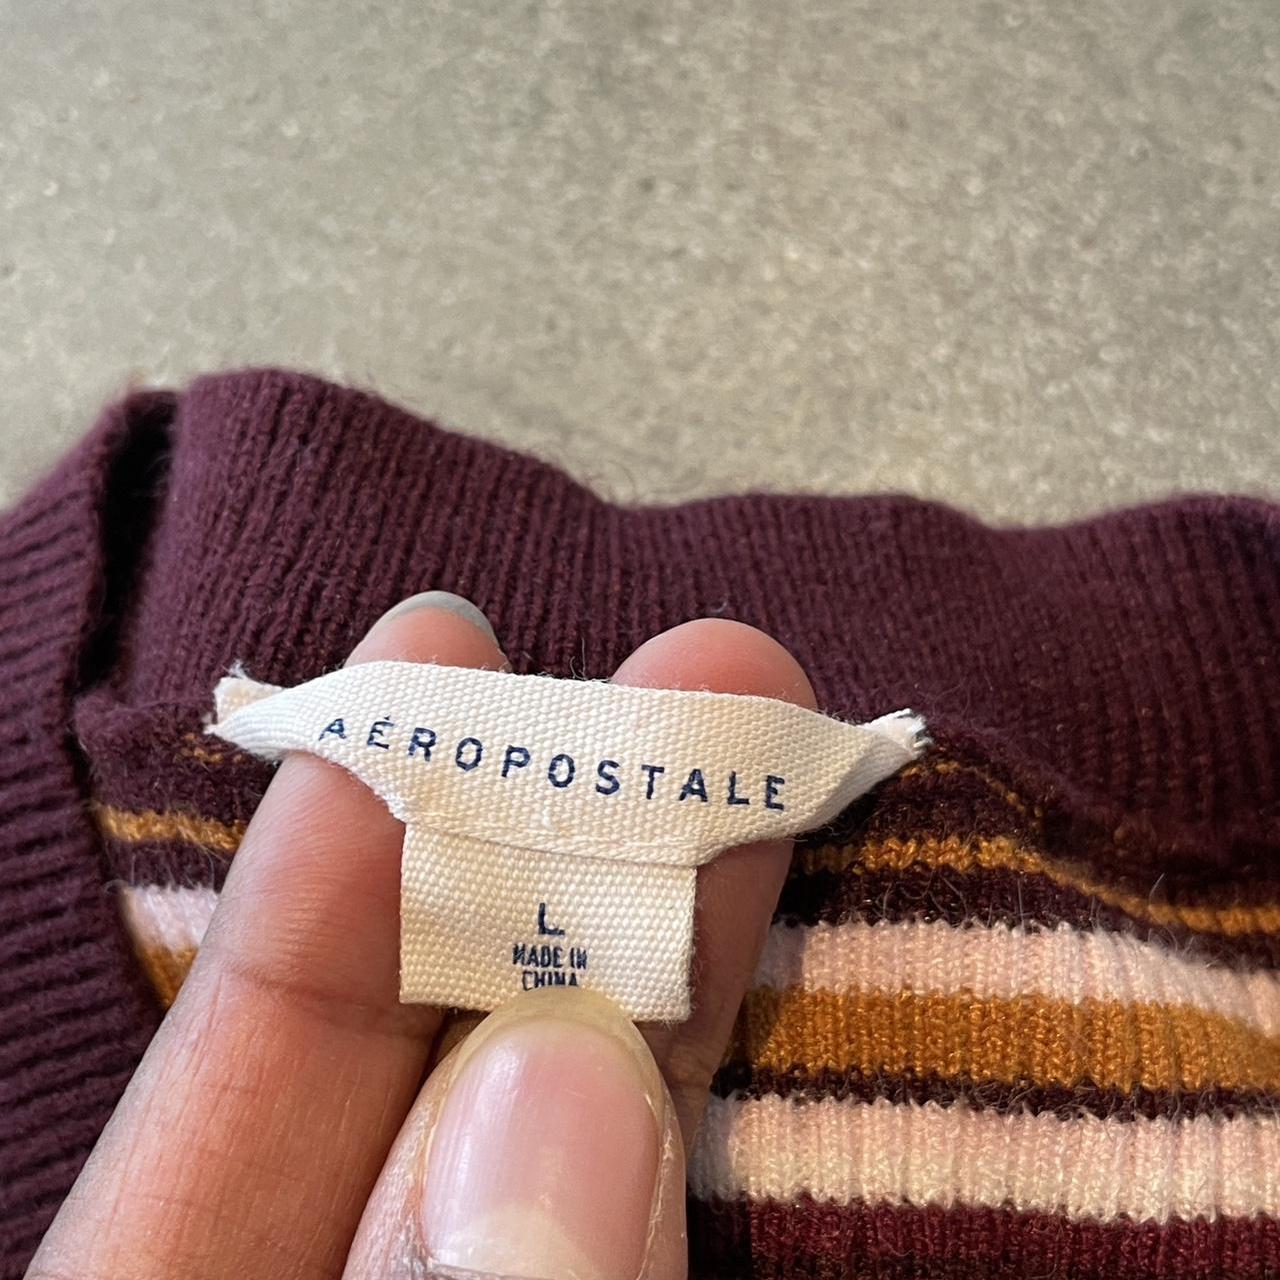 Aeropostale knit striped dress - L